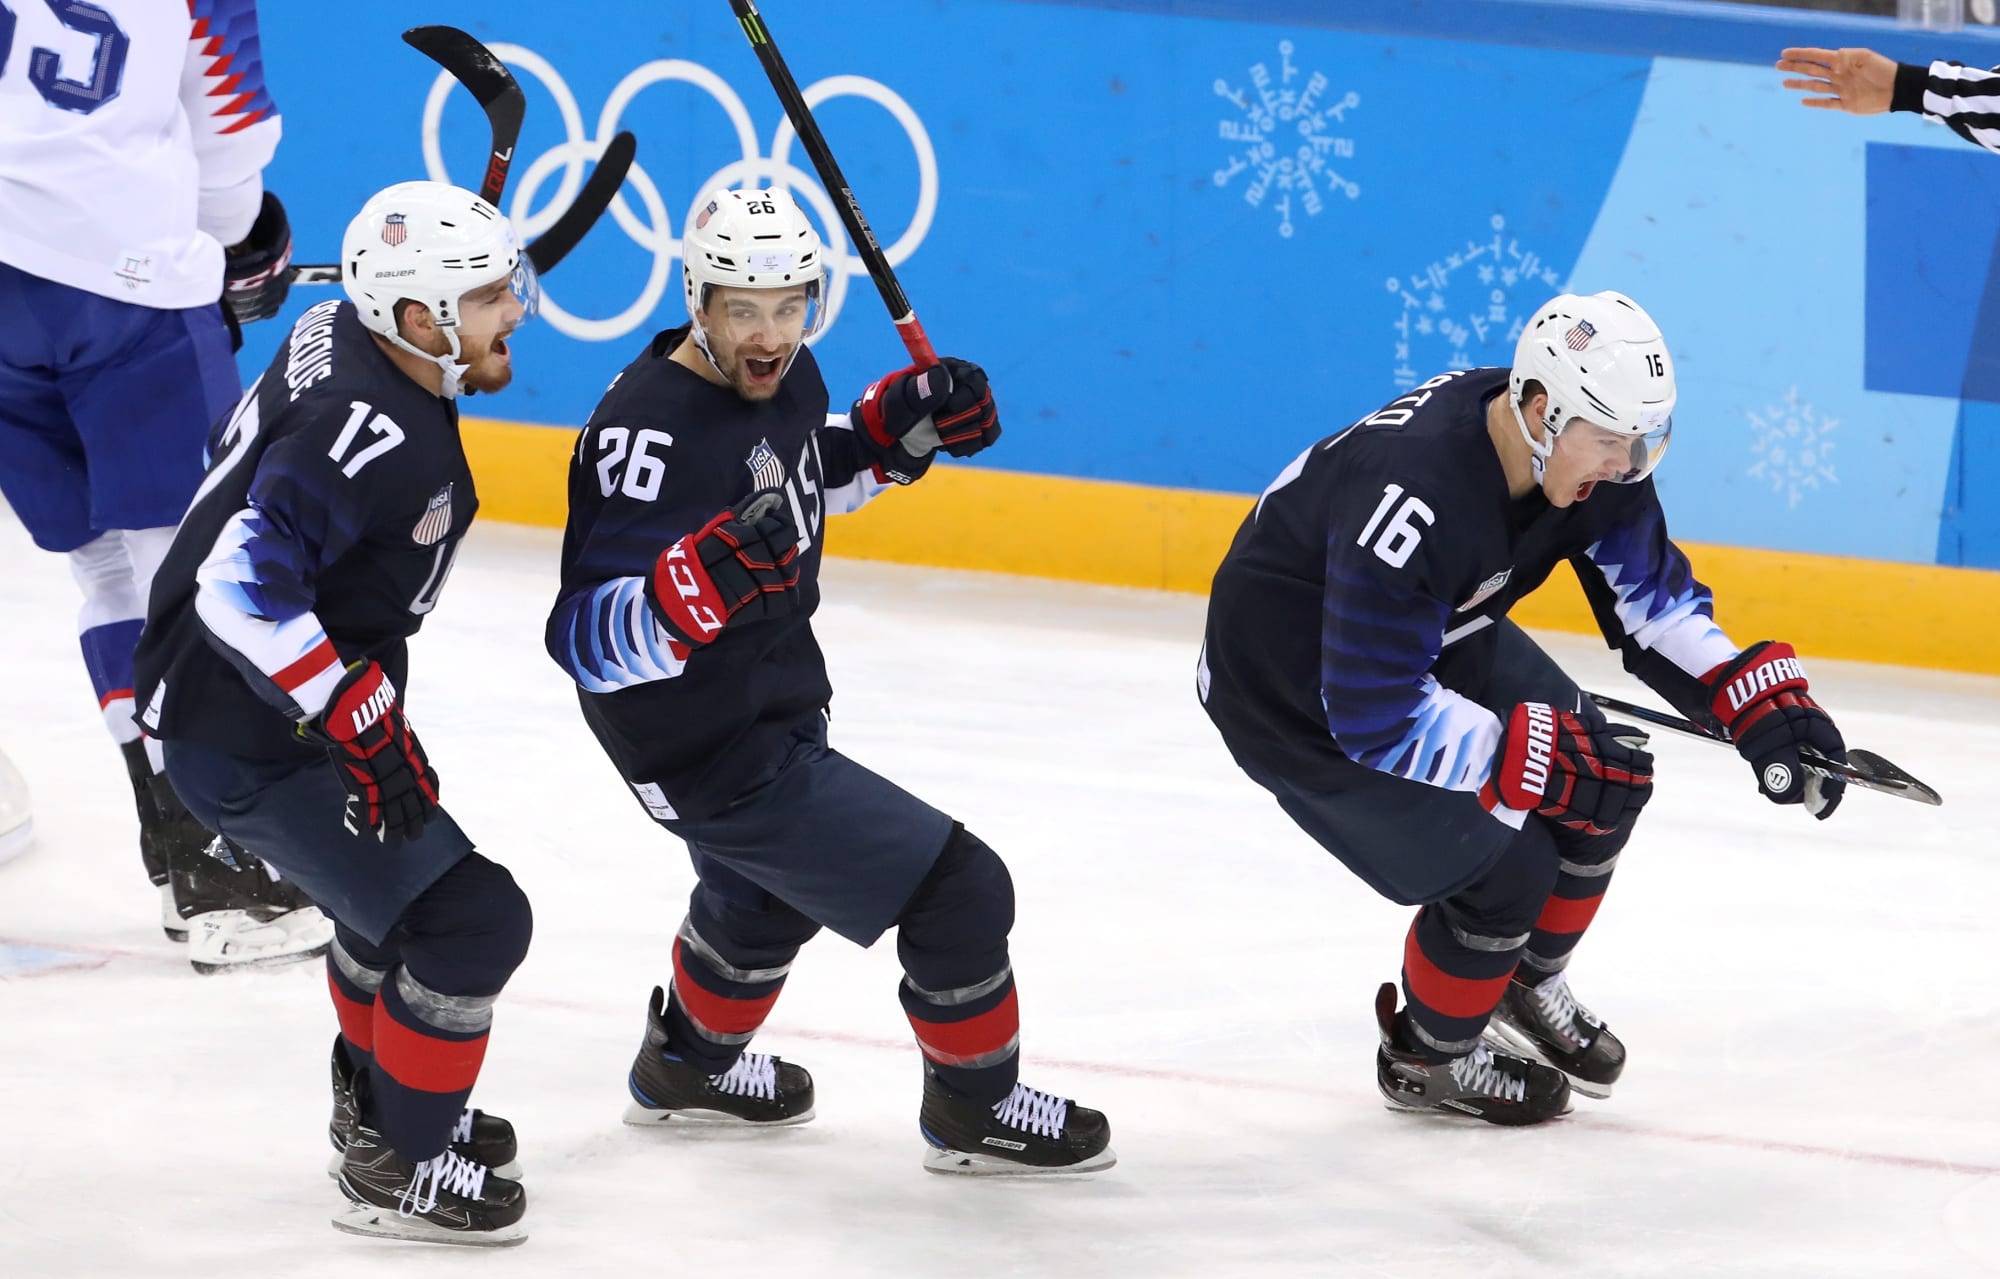 Olympics men's hockey, USA vs. Slovakia results and highlights